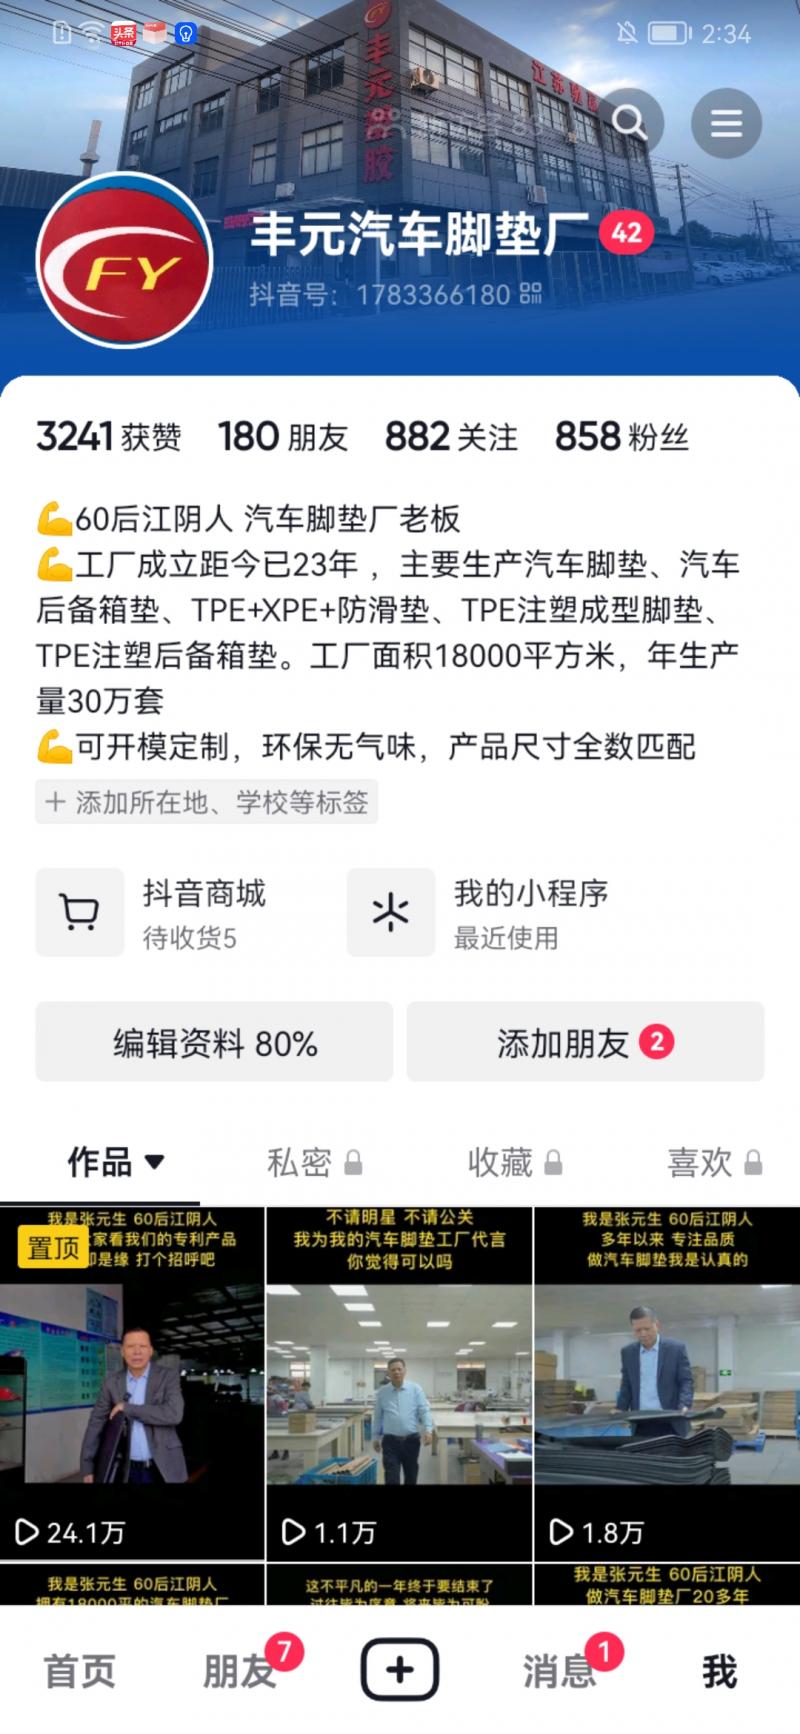 江阴市周庄丰元塑胶有限公司-抖音短视频运营